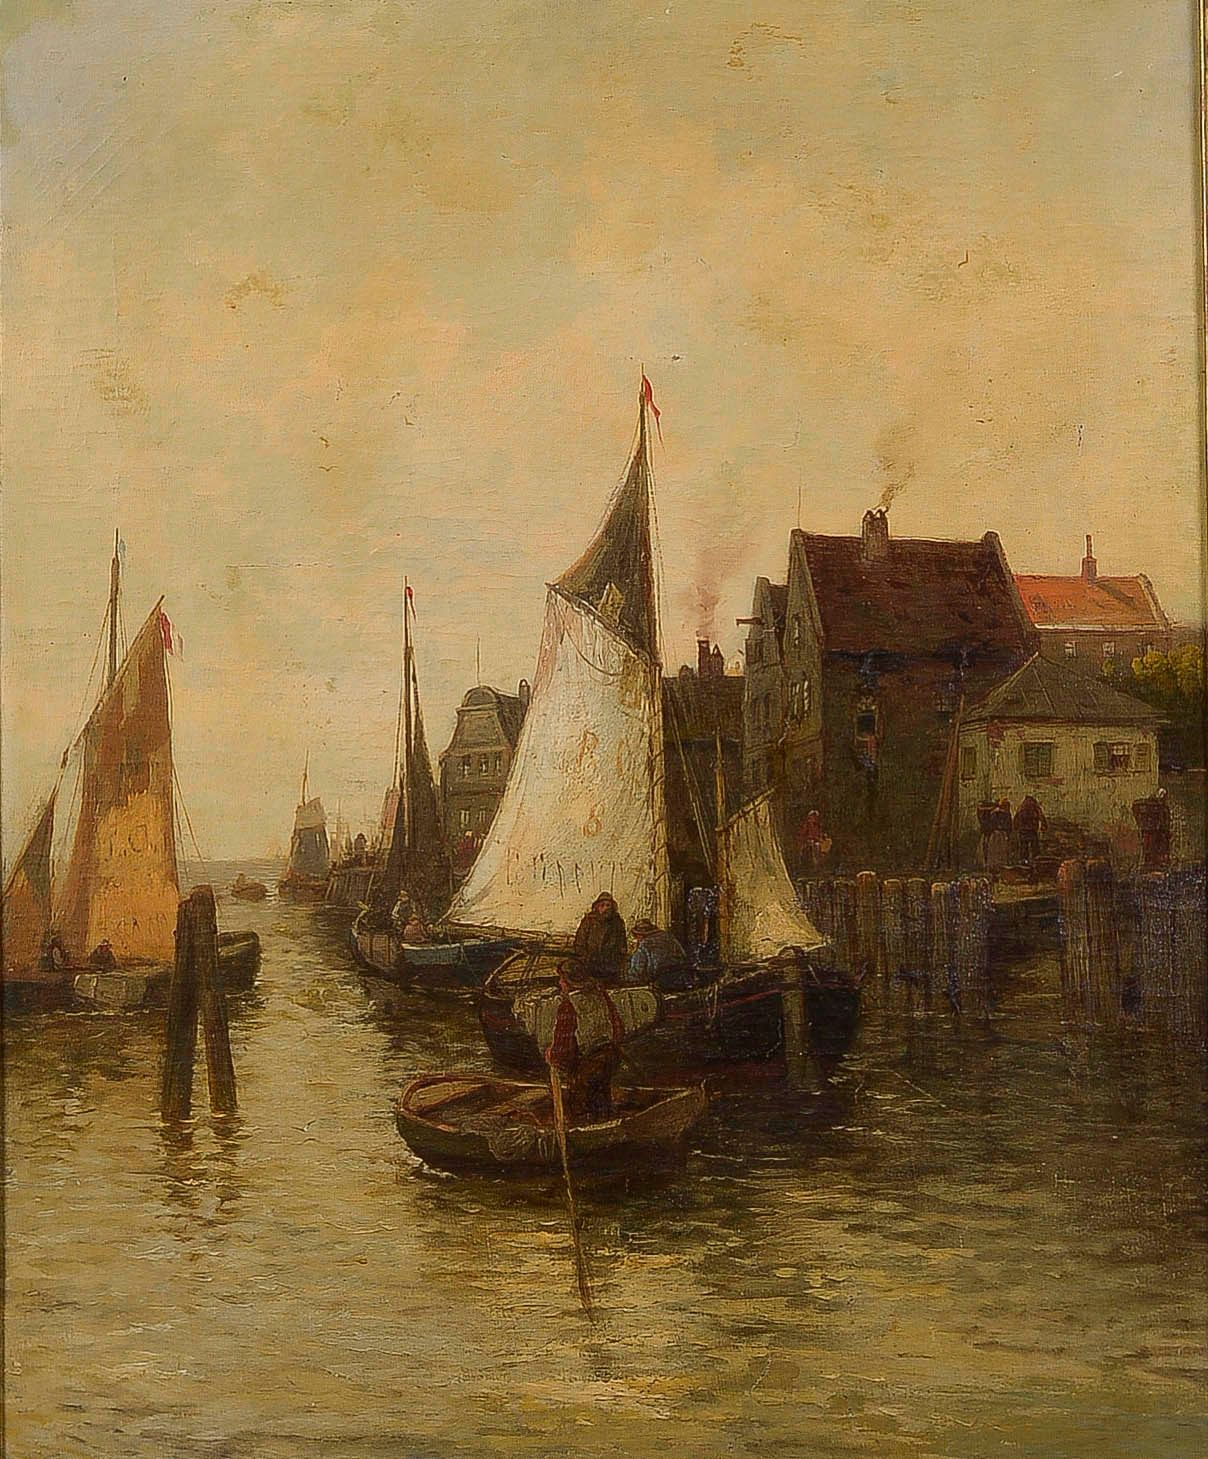 Null Scuola olandese del 1900 circa

Il ritorno dei pescatori nel piccolo porto
&hellip;